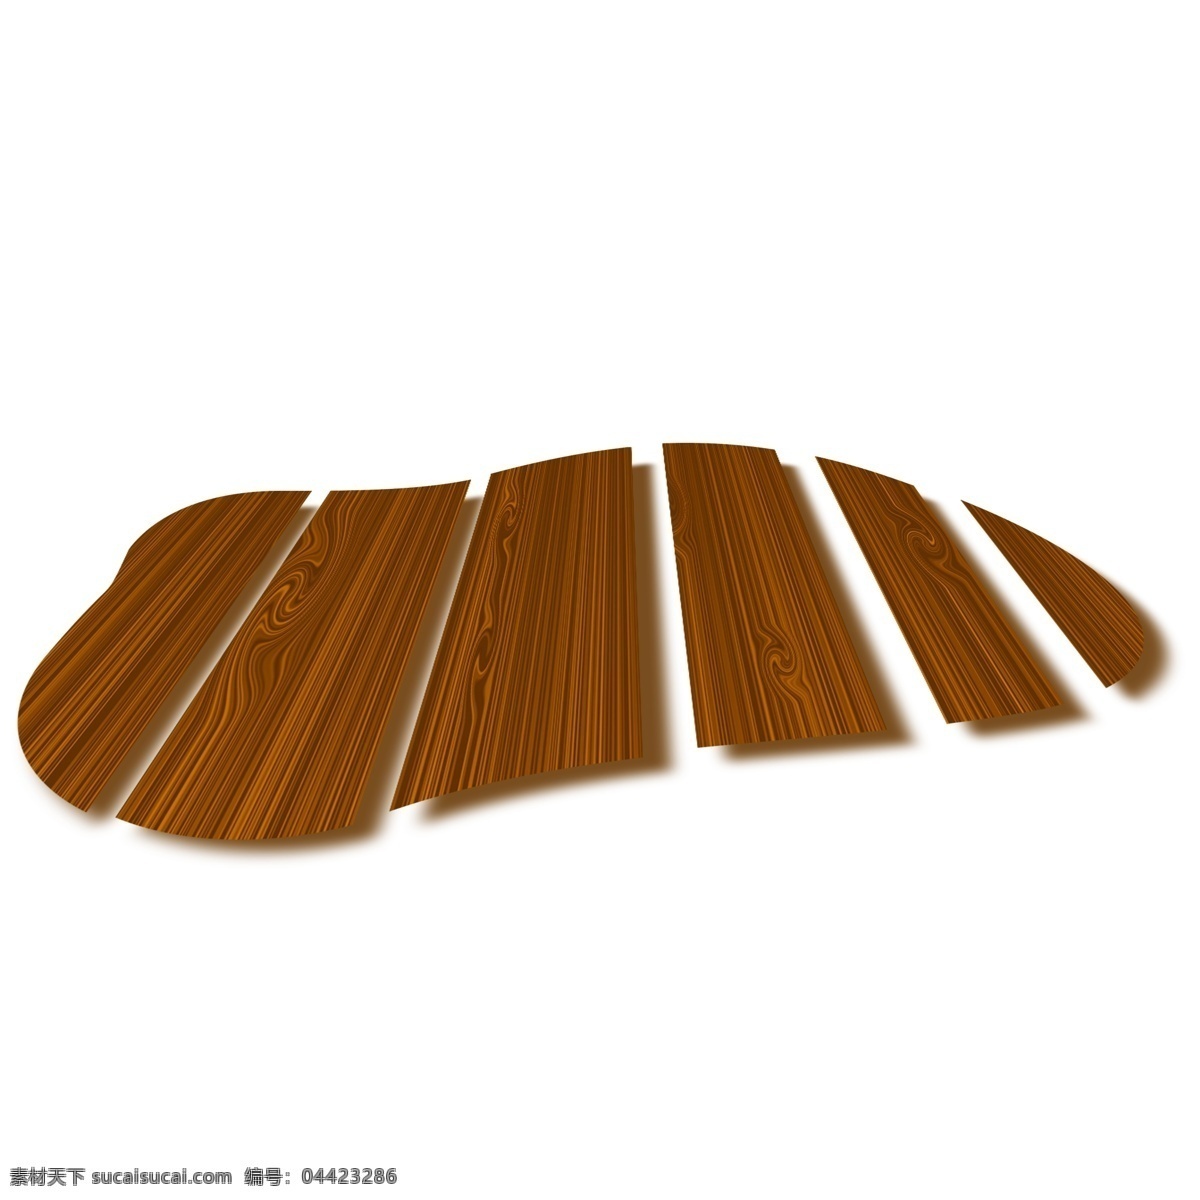 棕色 木板 地板 插画 木质的地板 卡通插画 木板插画 木纹插画 木质插画 实木产品 木纹的地板